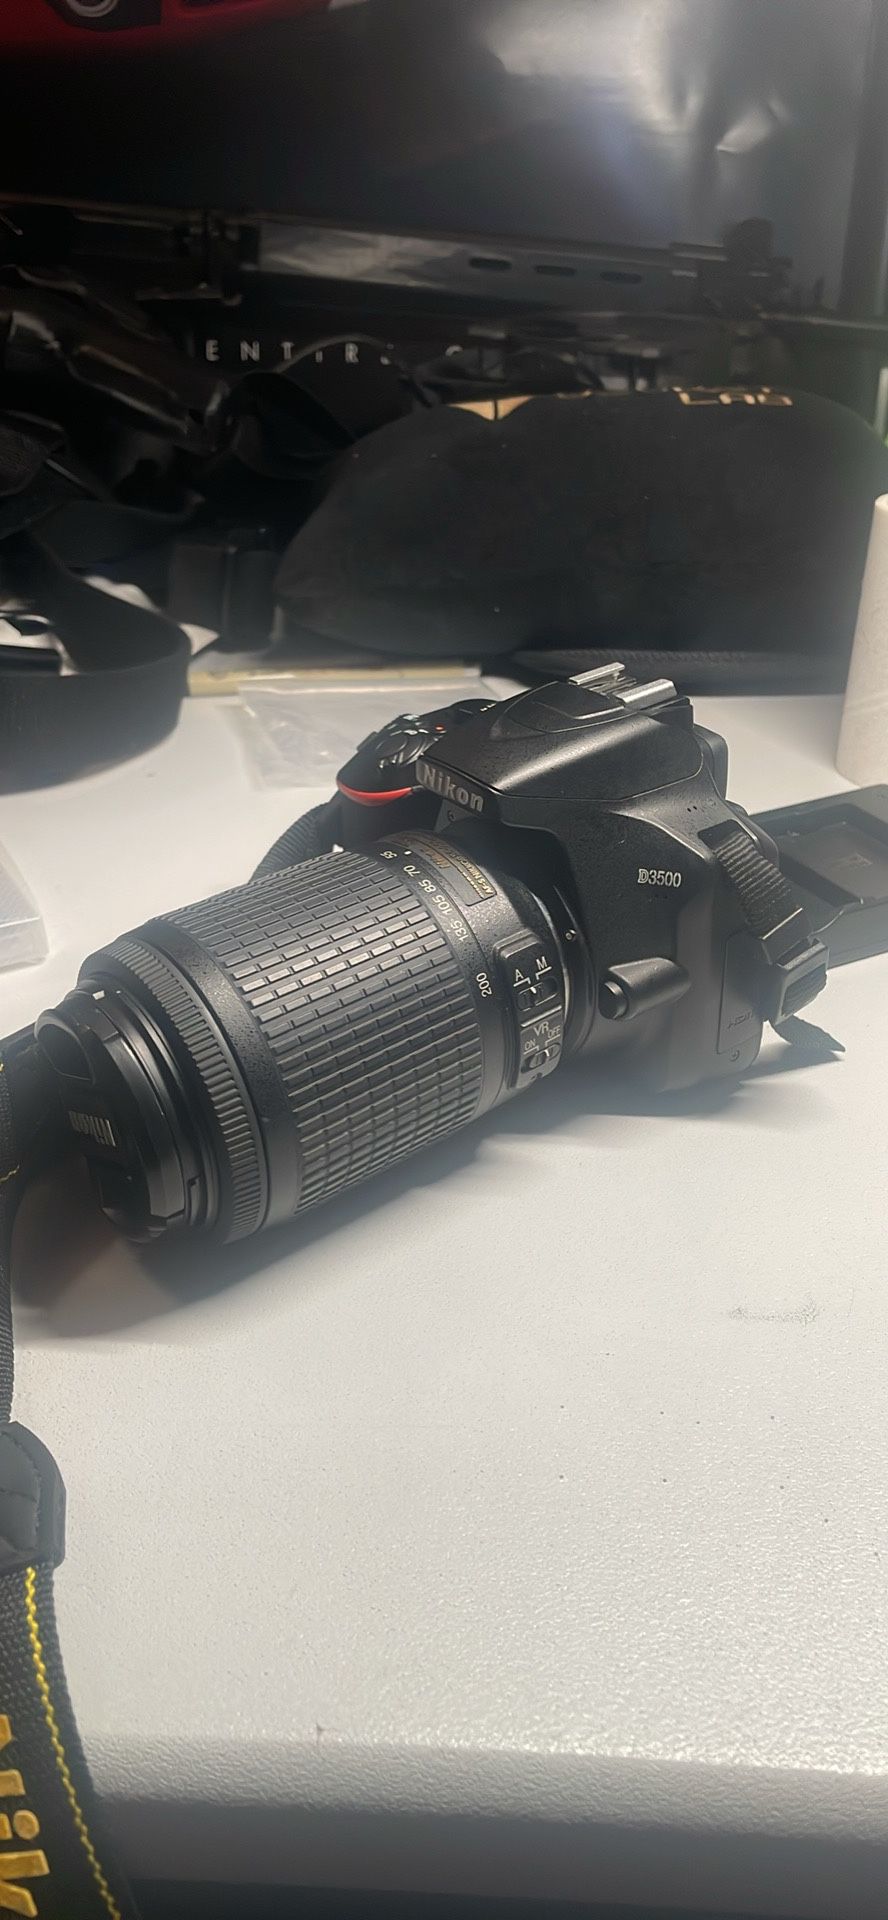 Nikon D3500 Kit w/55-200mm Lens